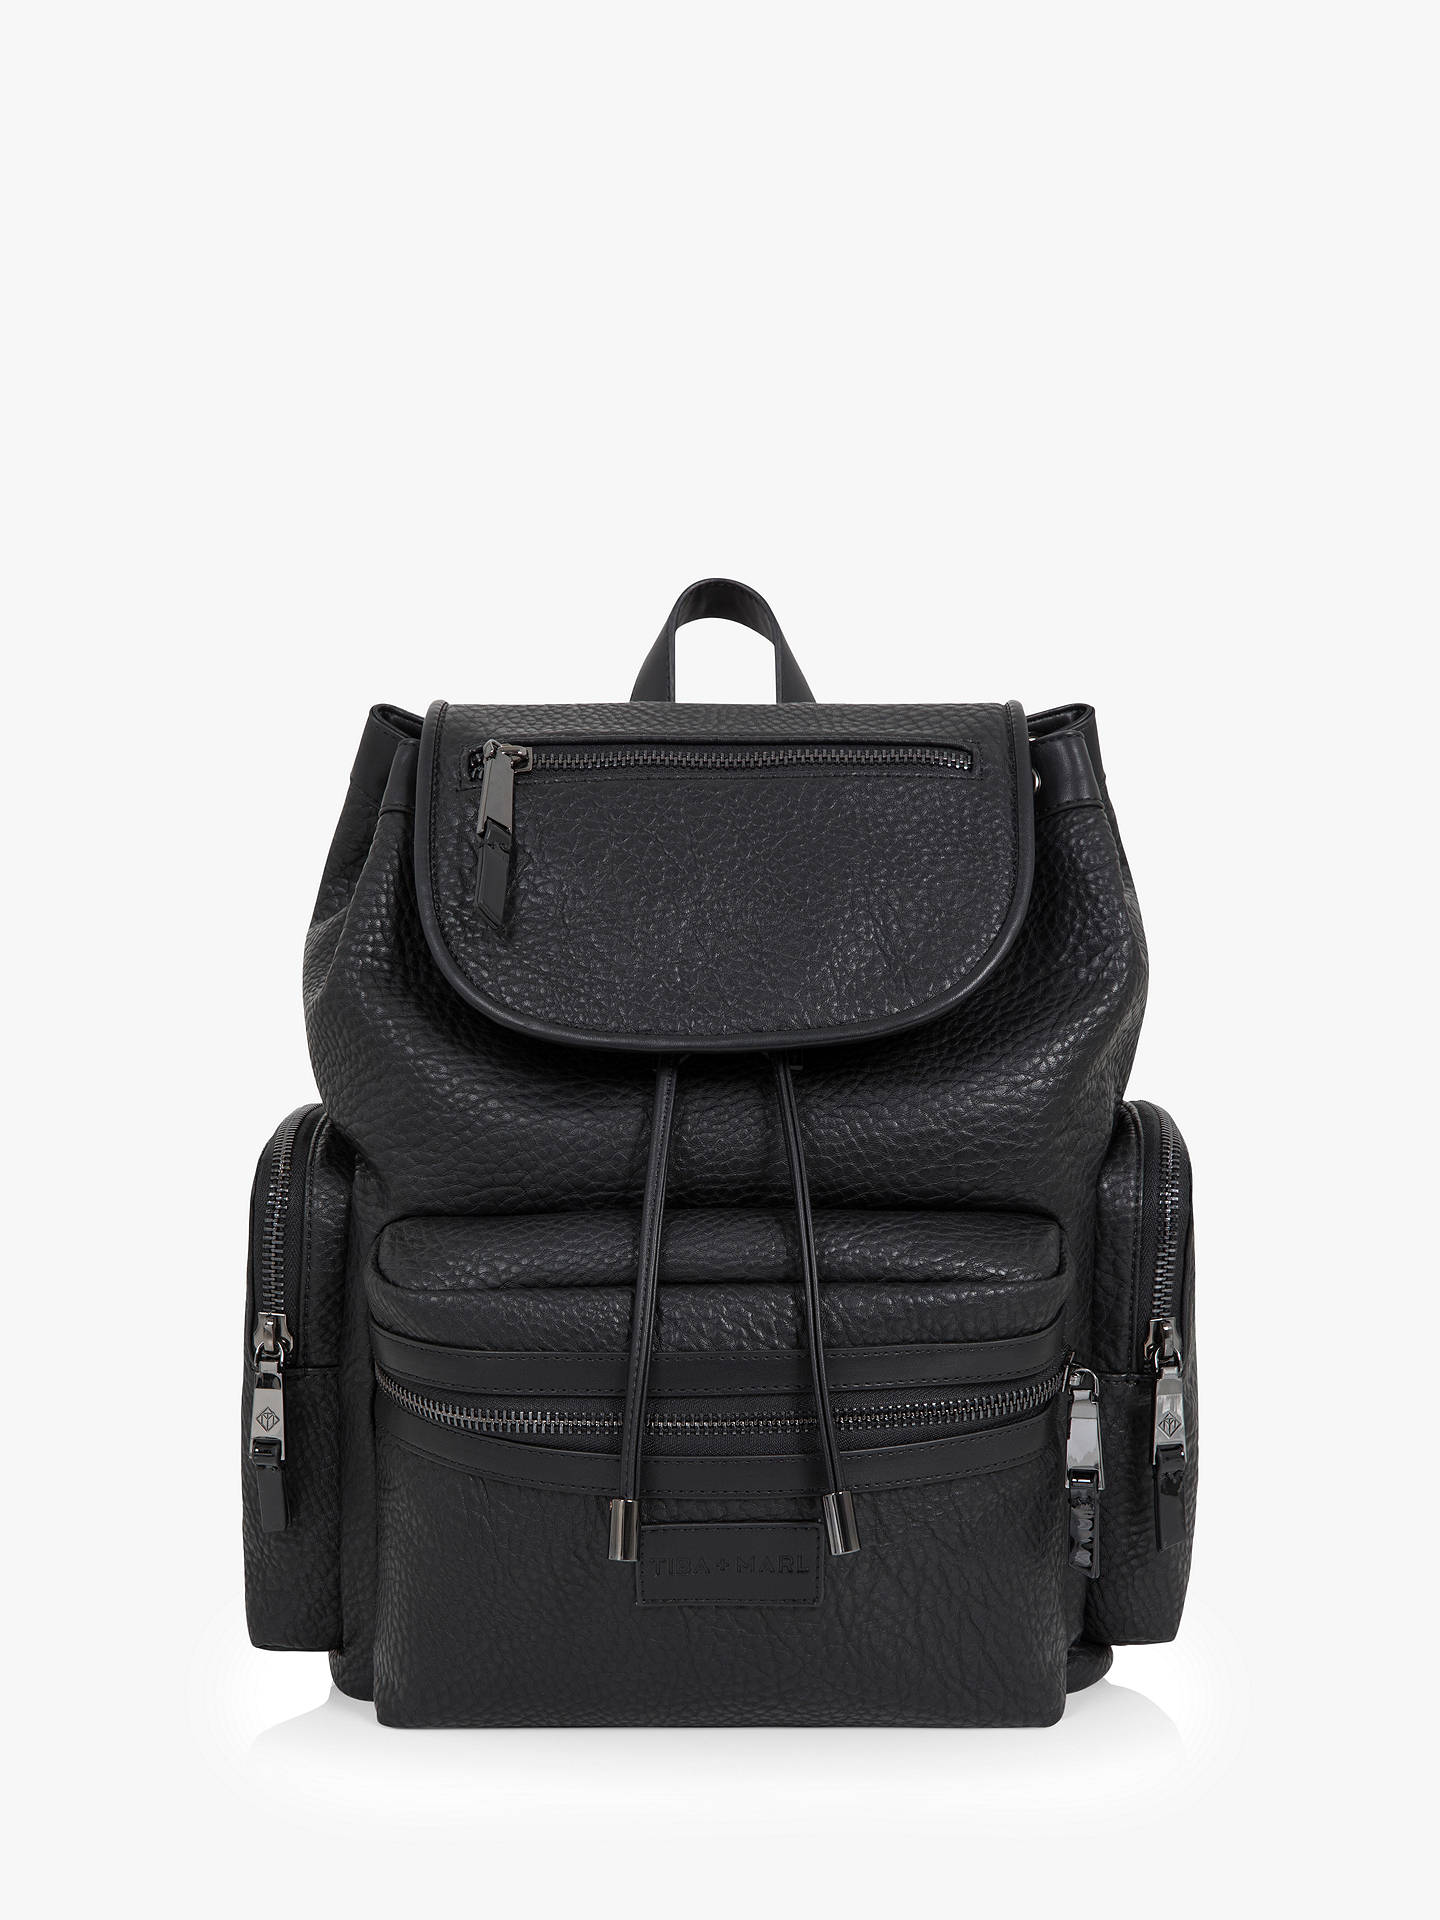 Tiba + Marl Kaspar Backpack Changing Bag, Black at John Lewis & Partners